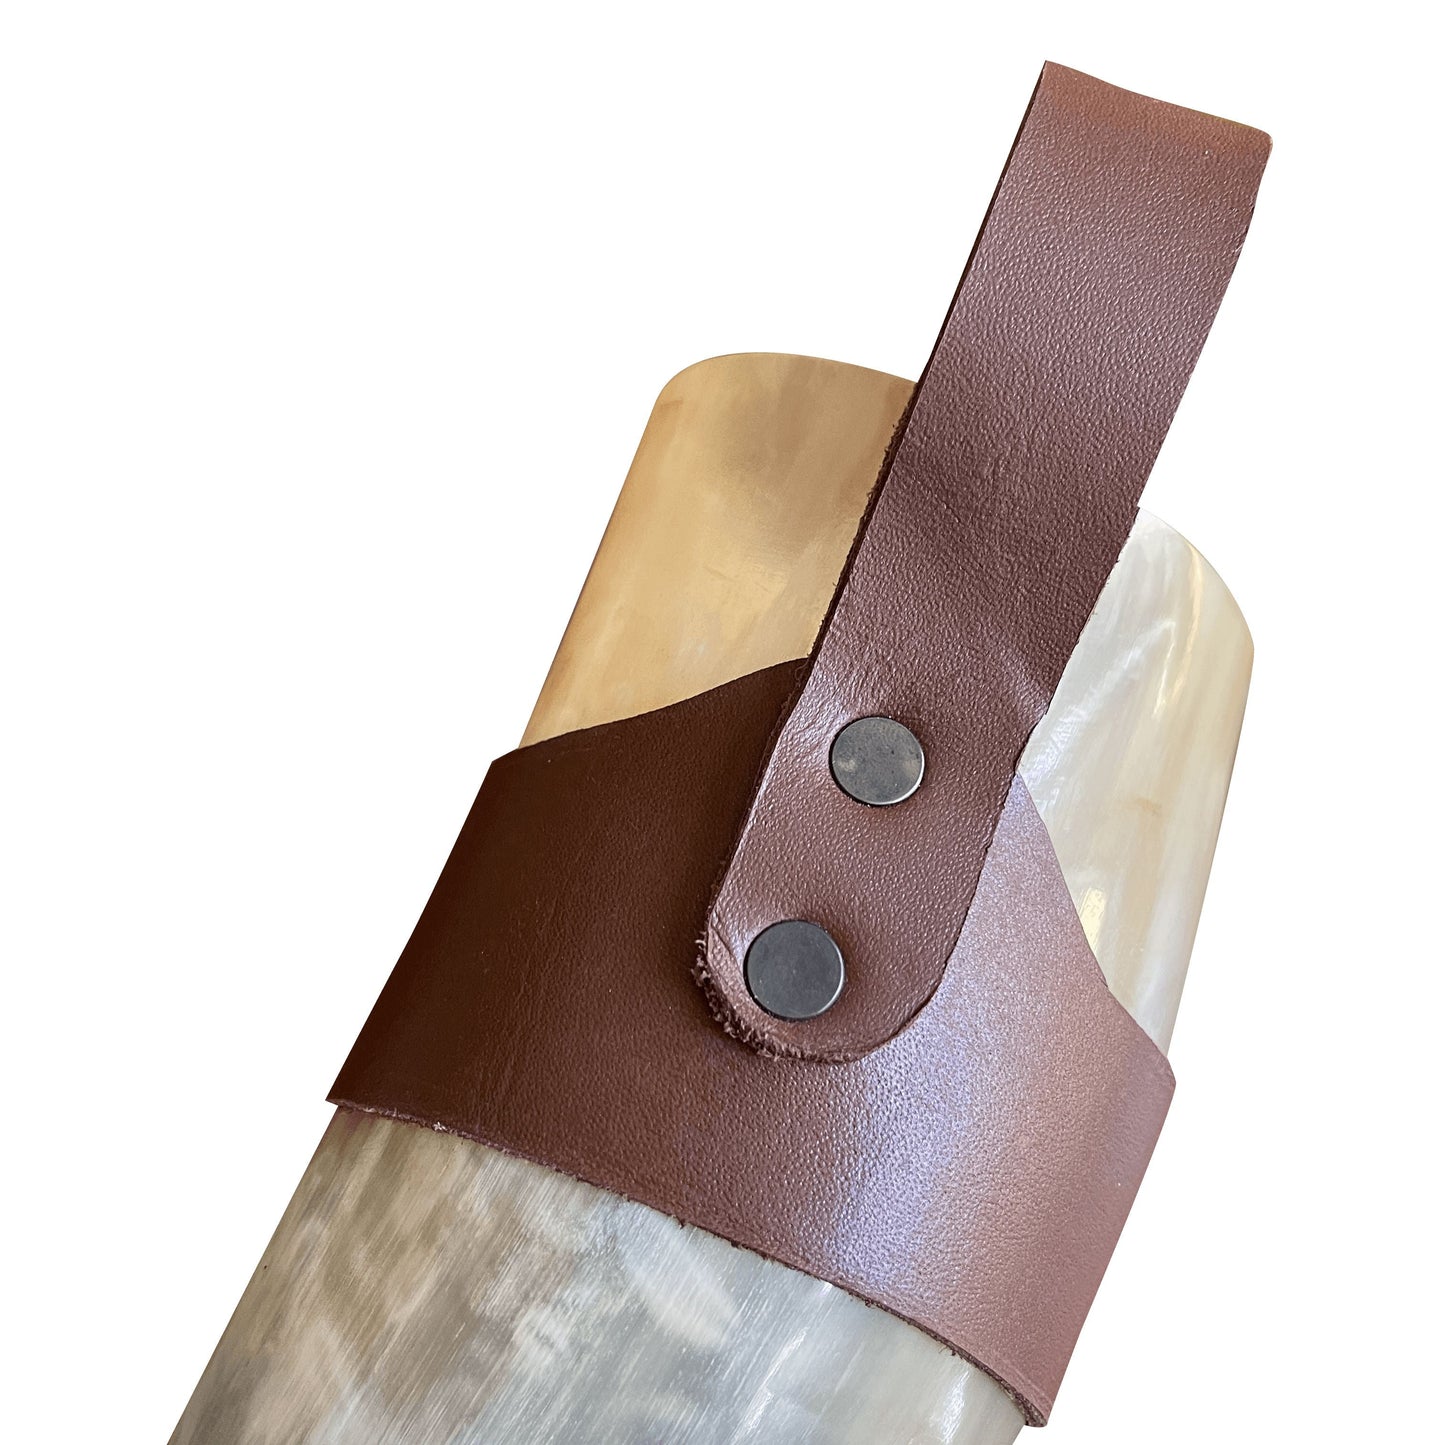 Corne viking avec boucle de ceinture et présentoir en fer